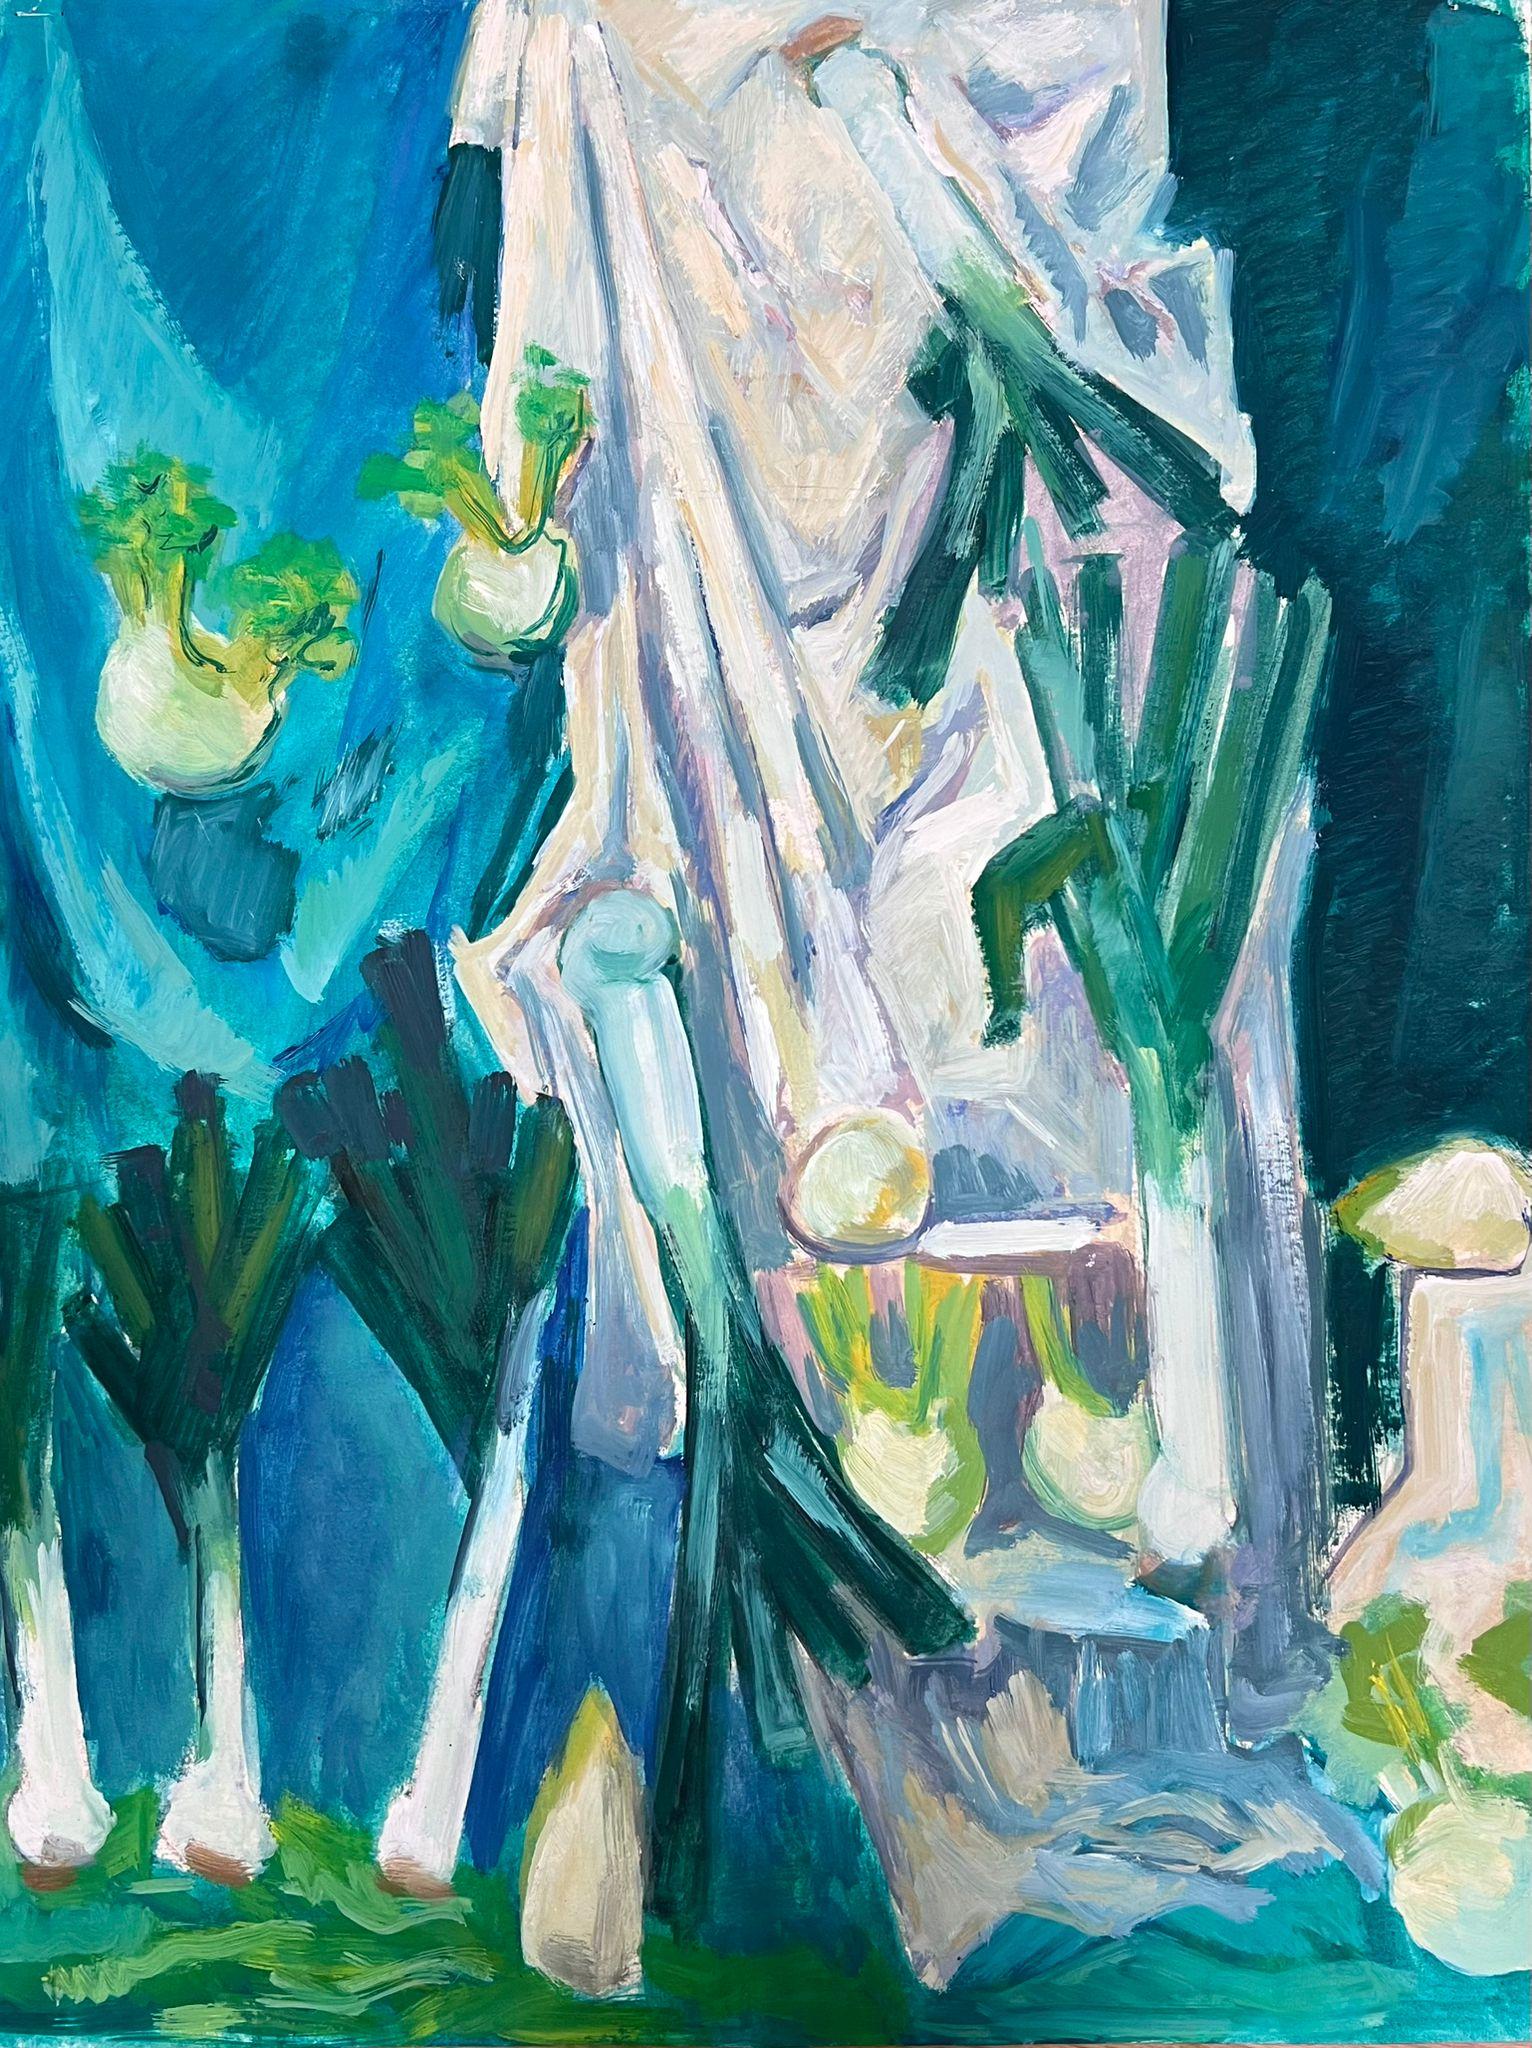 Gemüsestillleben
von Guy Nicod
(Französisch 1923 - 2021)
Öl auf Künstlerpapier, ungerahmt
Gemälde : 21 x 16,5 Zoll
verso gestempelt
Herkunft: Künstlernachlass, Frankreich
Zustand: sehr guter und gesunder Zustand